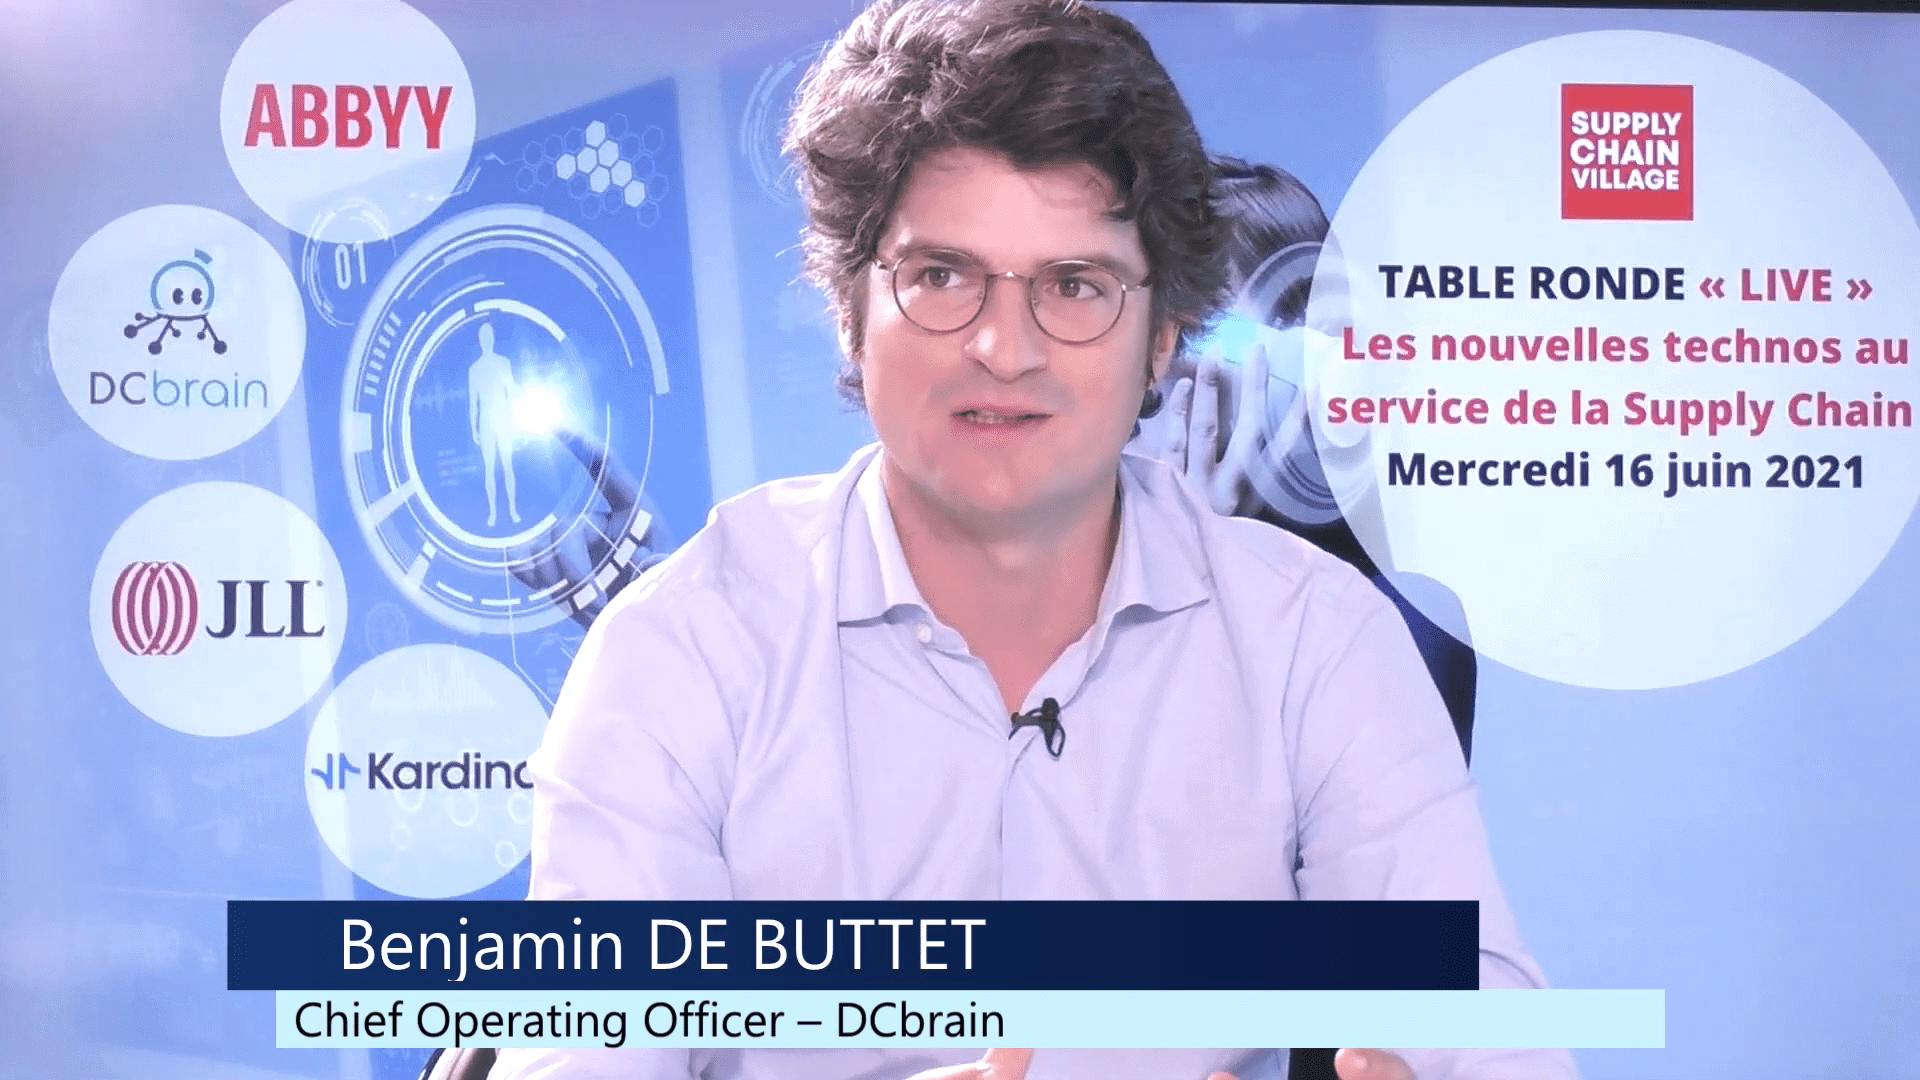 Benjamin de Buttet lors de la table ronde nouvelles technos supply chain